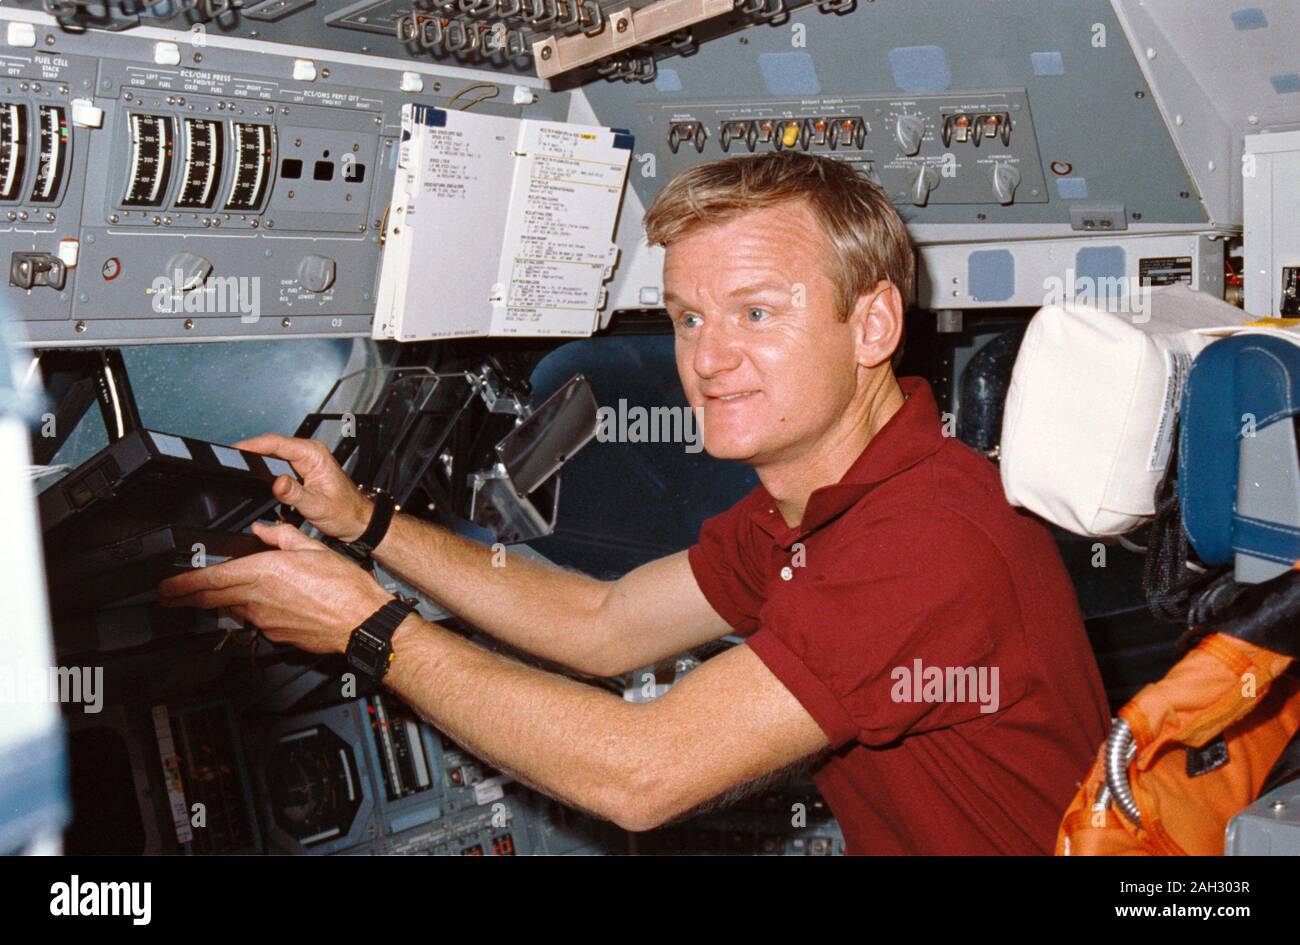 STS-36 pilota Giovanni H. Casper raggiunge per la navetta portatile computer di bordo (SPOC), un computer portatile, mentre presso la stazione di piloti sulla fuga in avanti mazzo di Atlantis, Orbiter veicolo (OV) 104. Casper, seduto nel sedile del pilota, solleva la SPOC dalla finestra di avanzamento battuta. Che compaiono intorno a lui sono avanti vano equipaggio windows, head up display (HUD), il volo complessivo specchietto, e una checklist allegata al pannello di controllo O3. Foto Stock